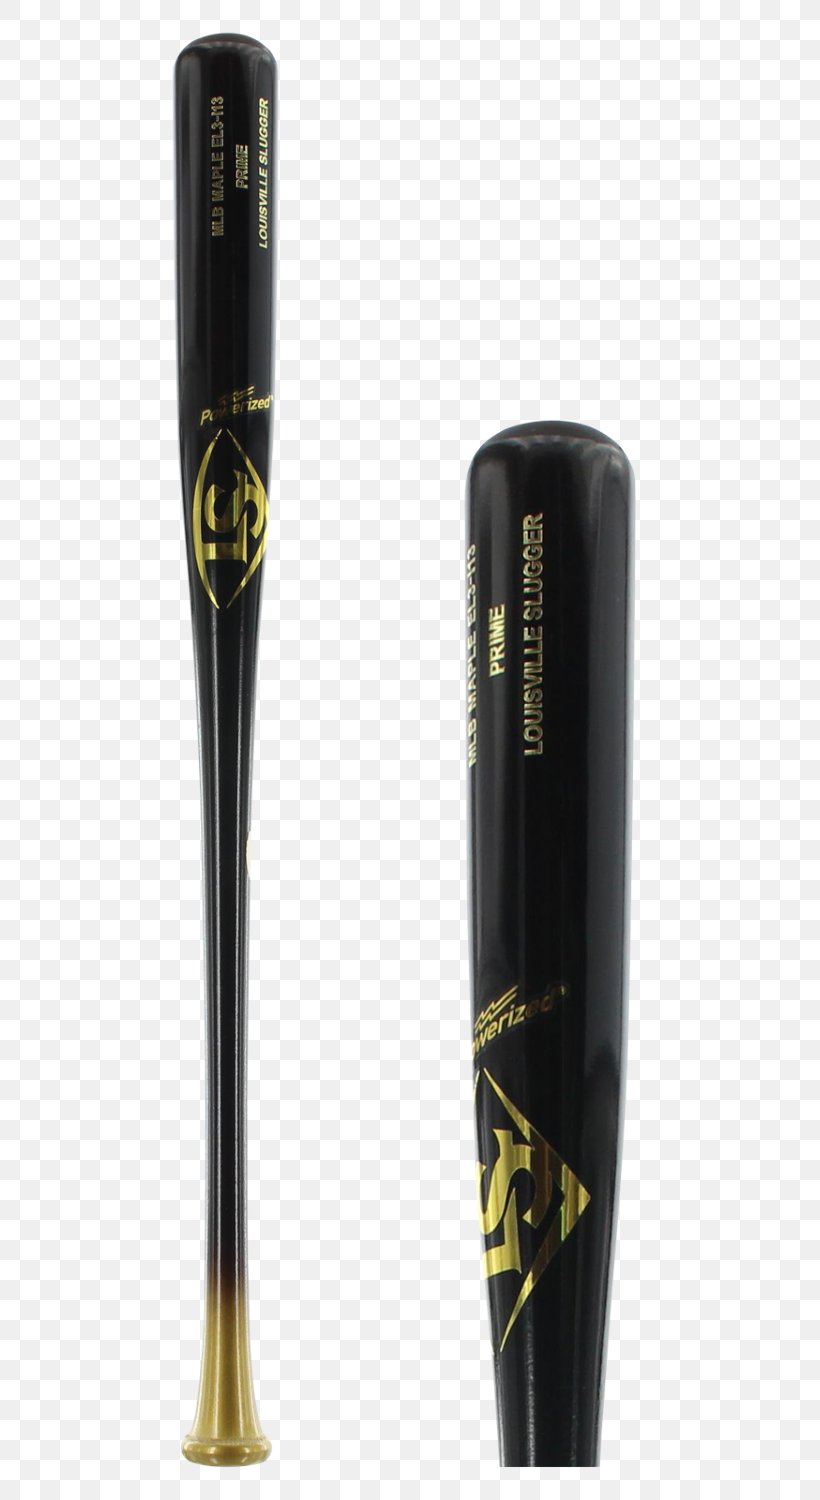 Baseball Bats Hillerich & Bradsby Composite Baseball Bat Batting, PNG, 750x1500px, Baseball Bats, Baseball, Baseball Bat, Baseball Equipment, Batting Download Free